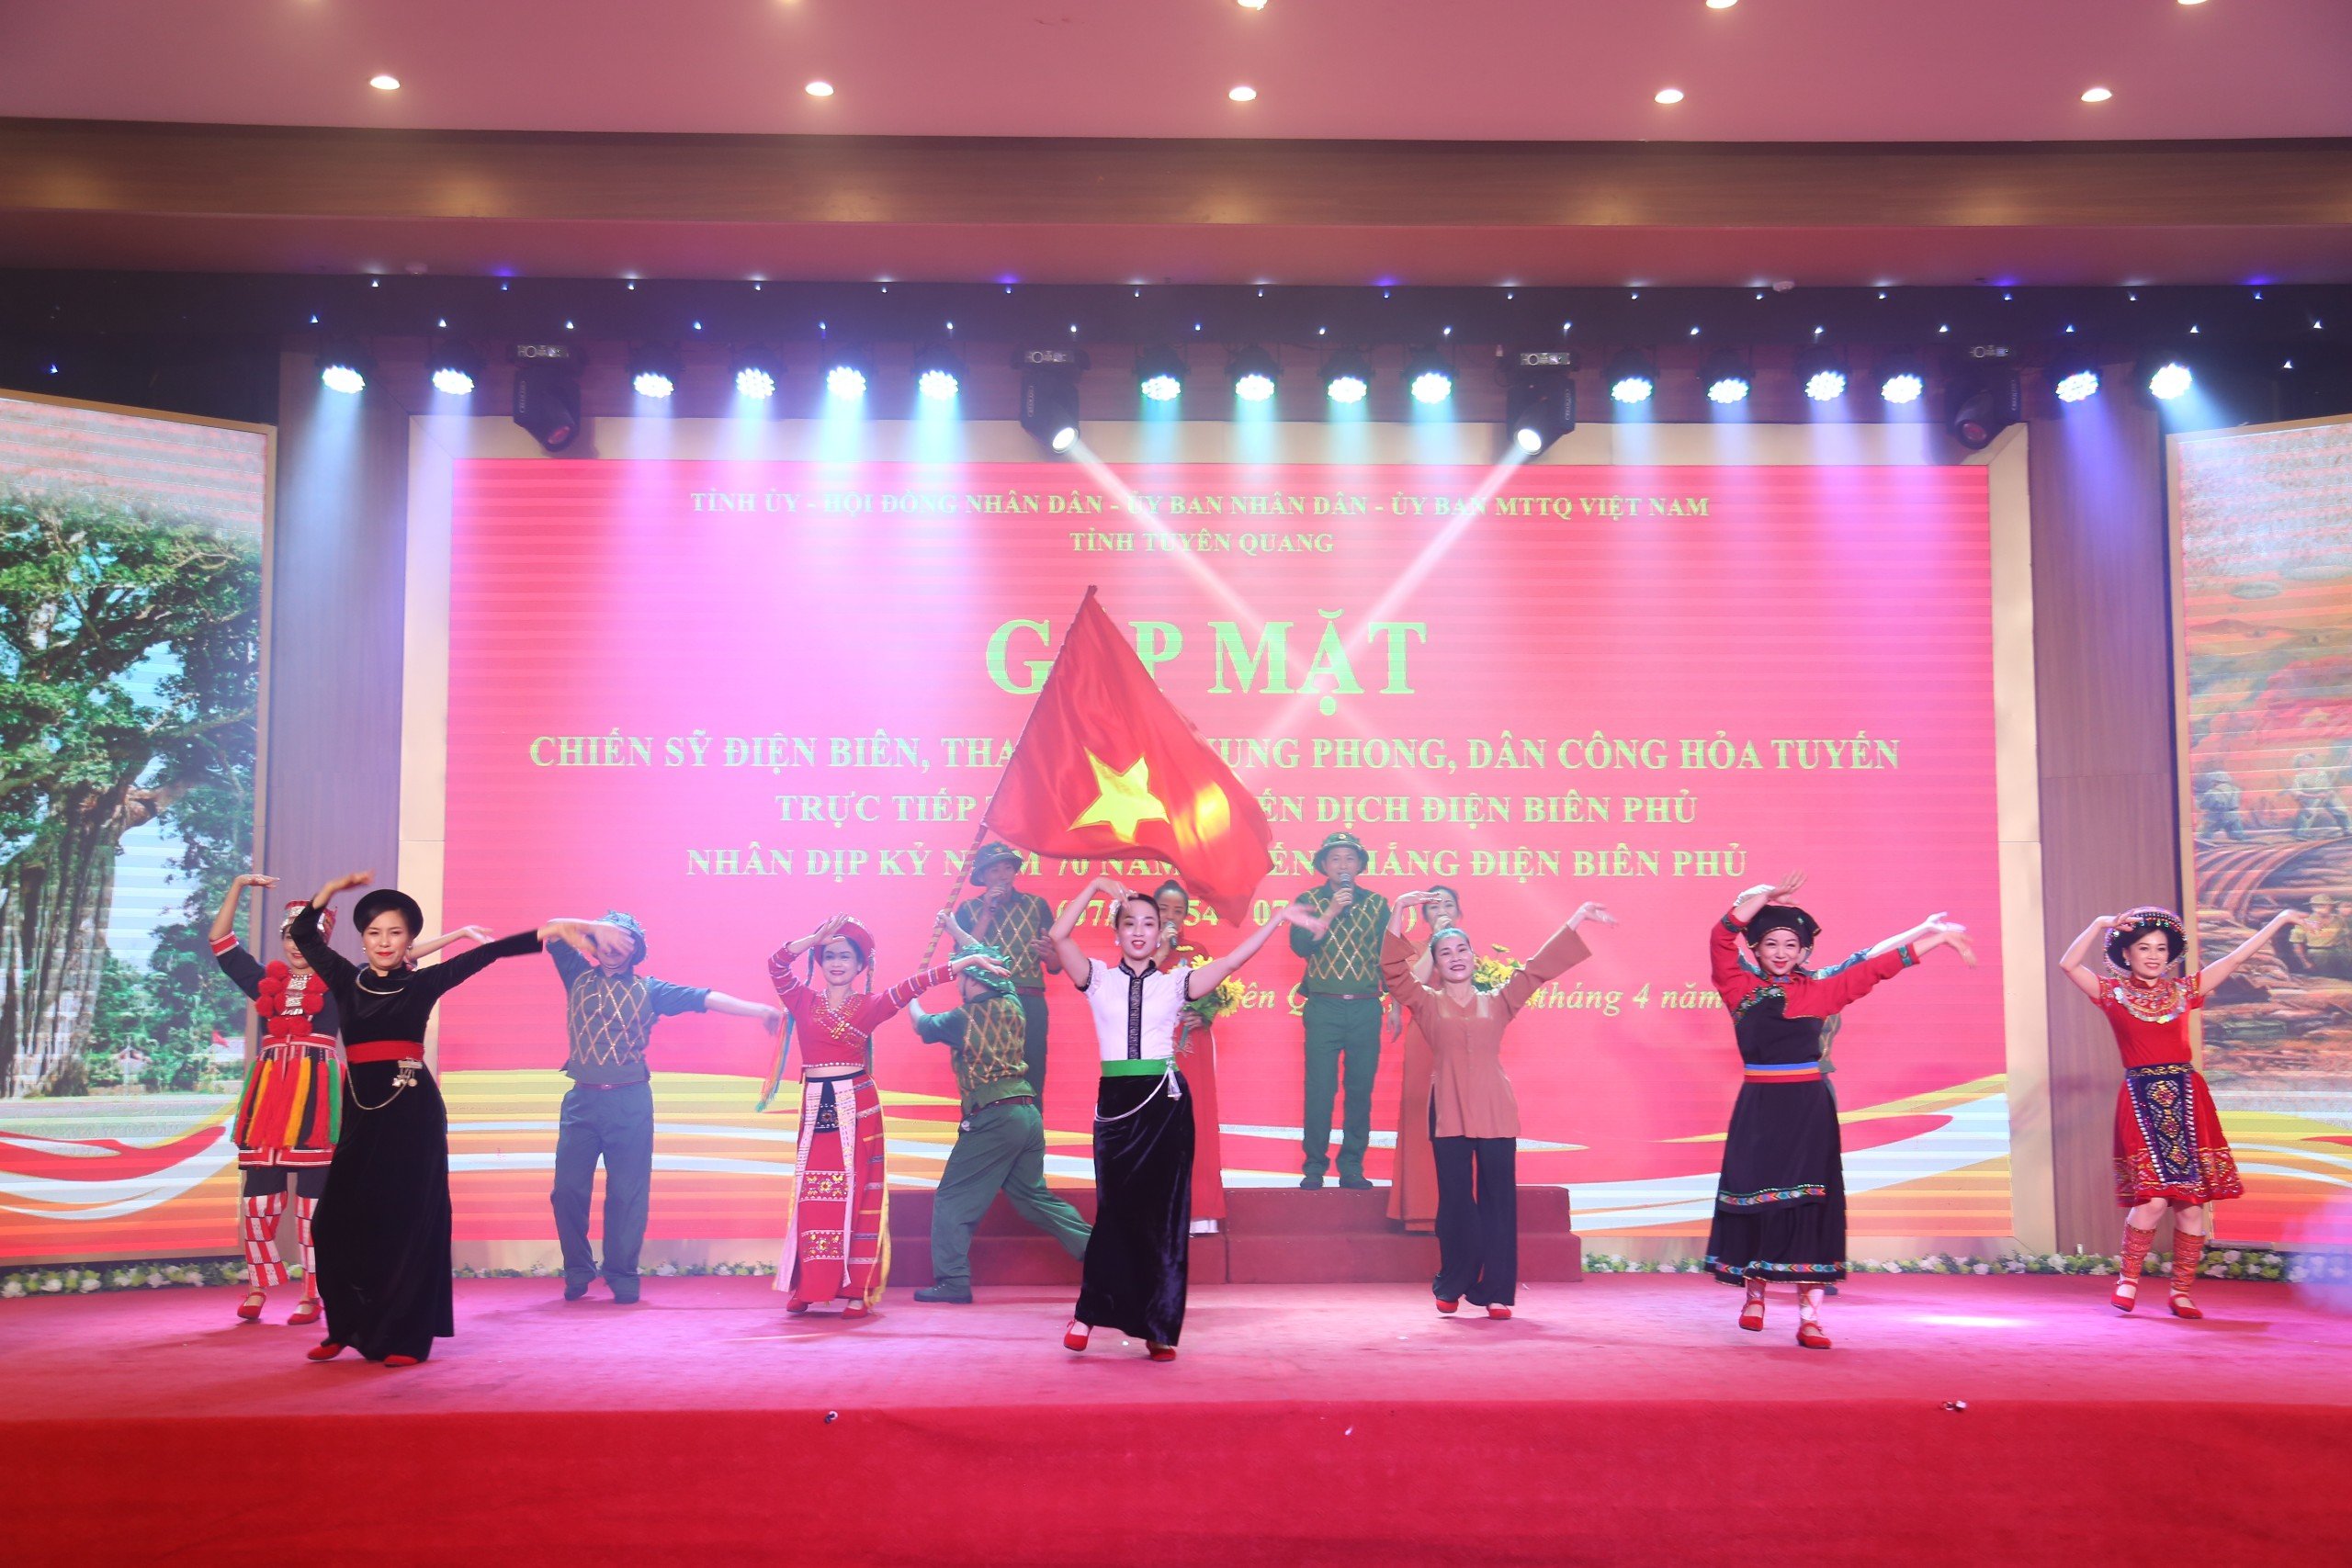 Tuyên Quang tổ chức Gặp mặt tri ân các chiến sĩ Điện Biên, thanh niên xung phong, dân công hỏa tuyến